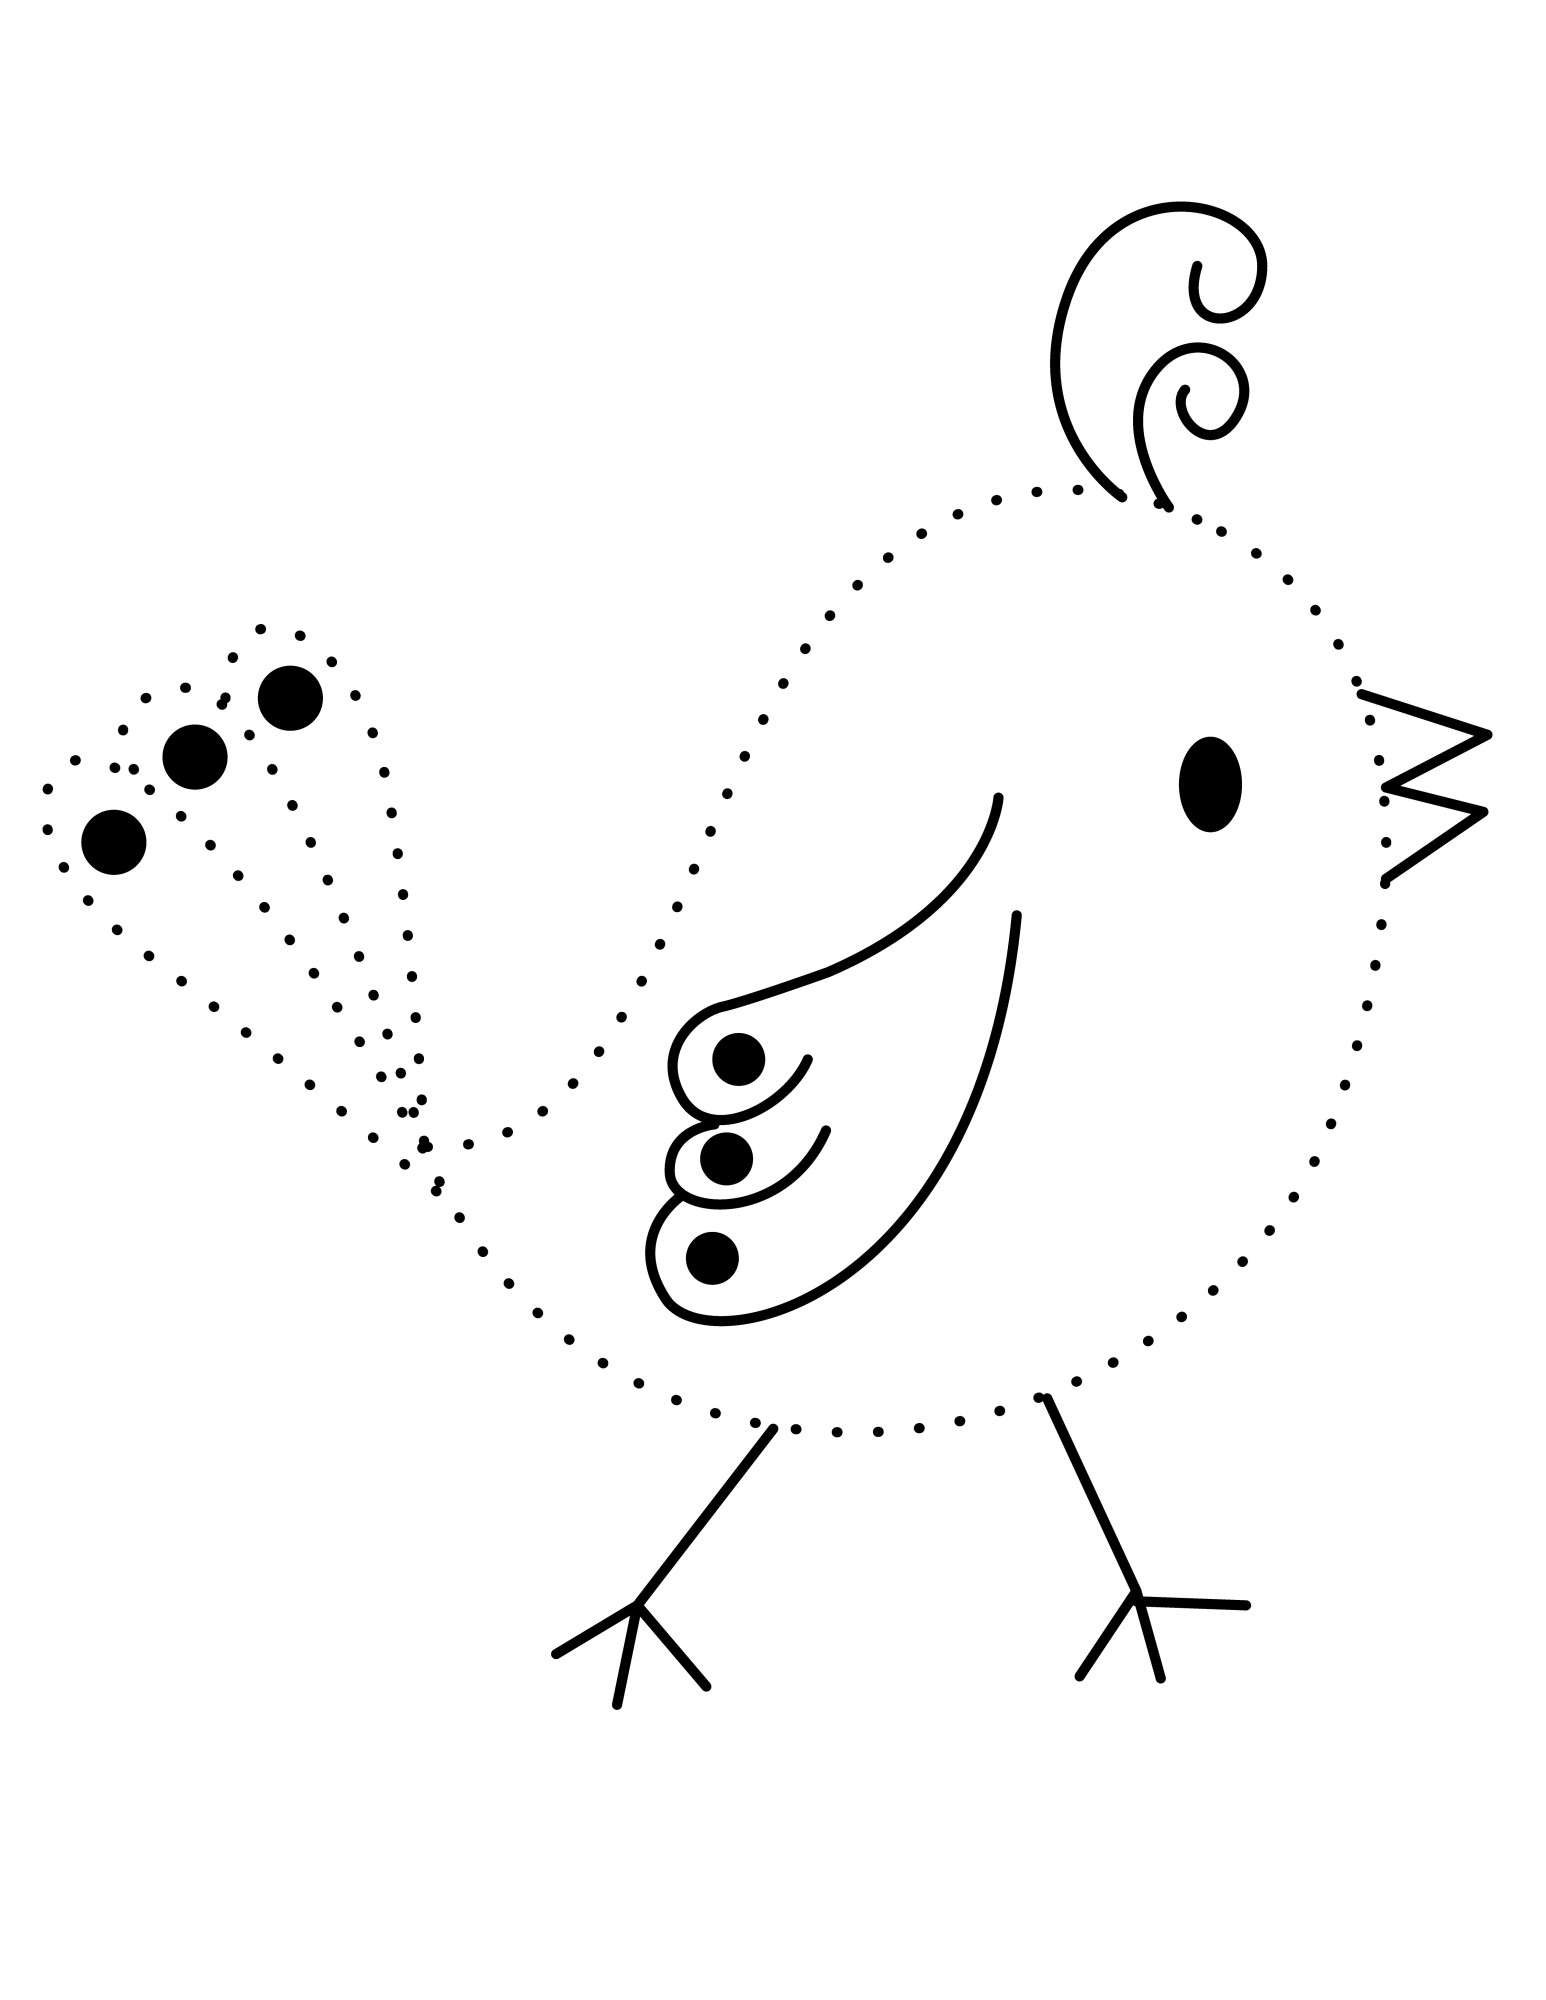 Раскраска для детей: птичка по точкам